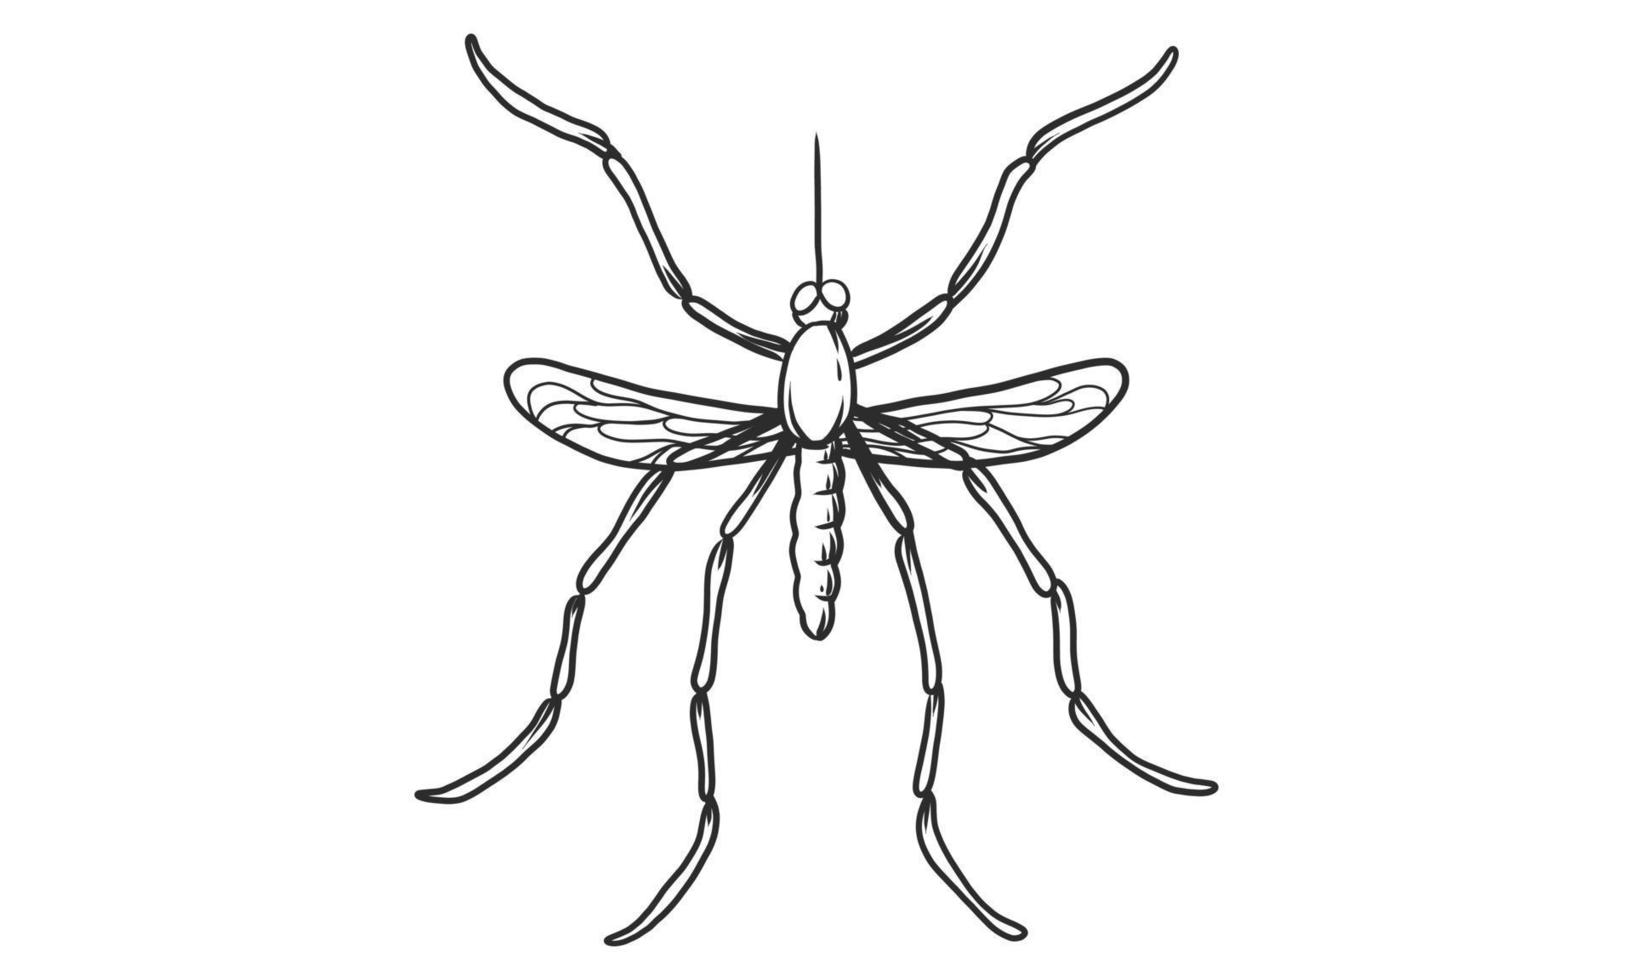 illustrazione vettoriale lineart di zanzara su sfondo bianco, schizzo di insetto zanzara vista dall'alto disegnato a mano